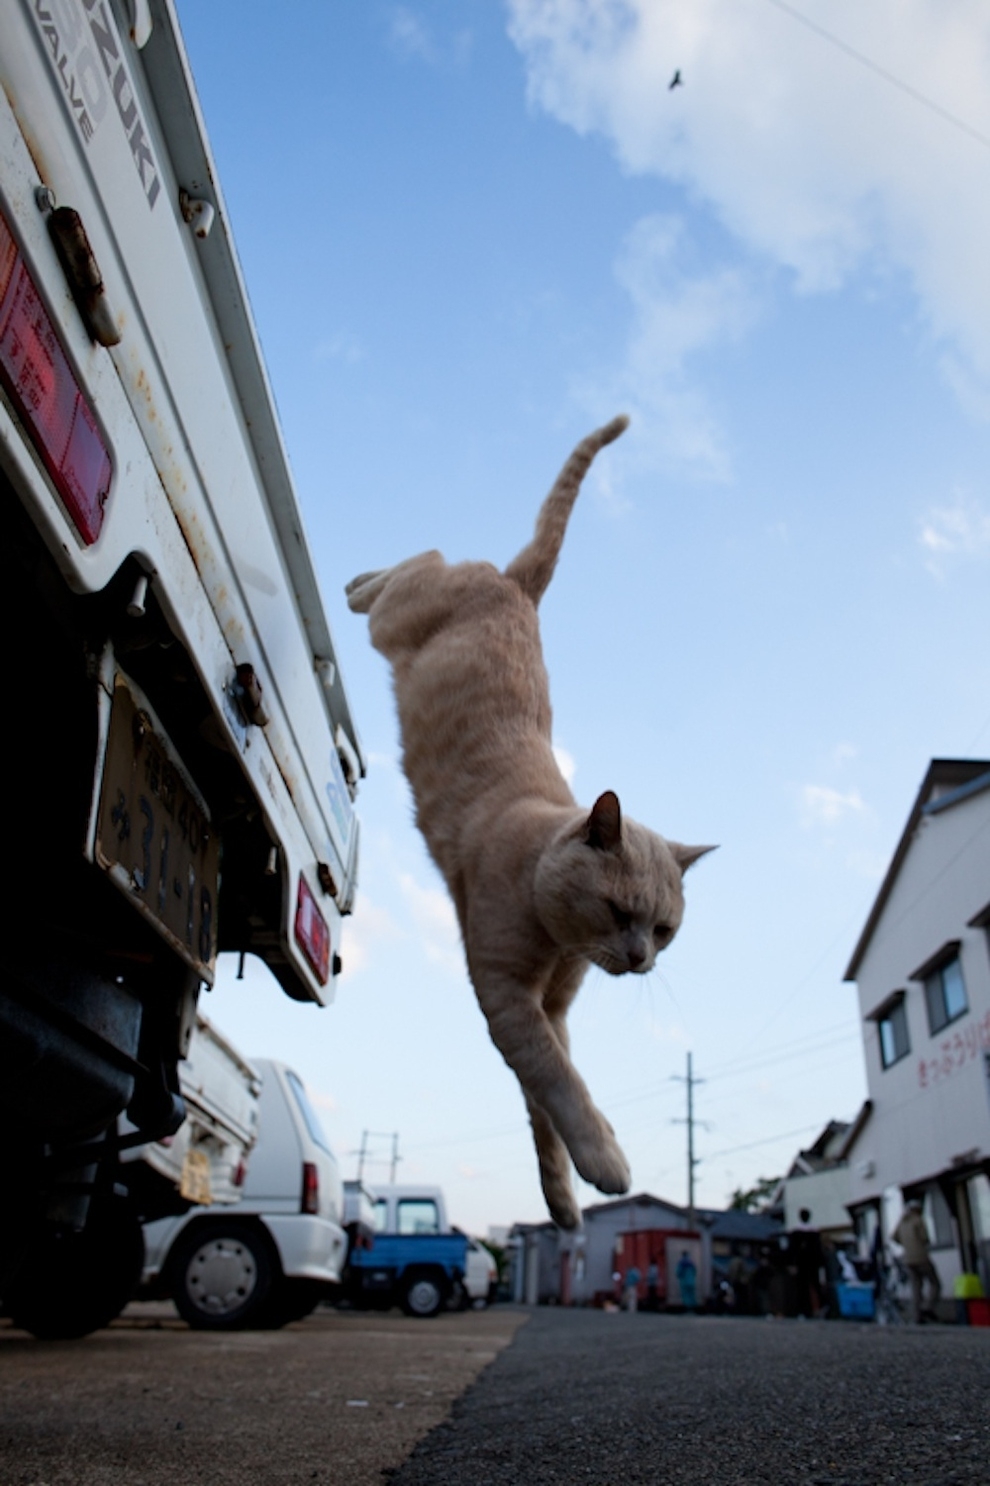 Cat Lady Heaven On An Island In Japan